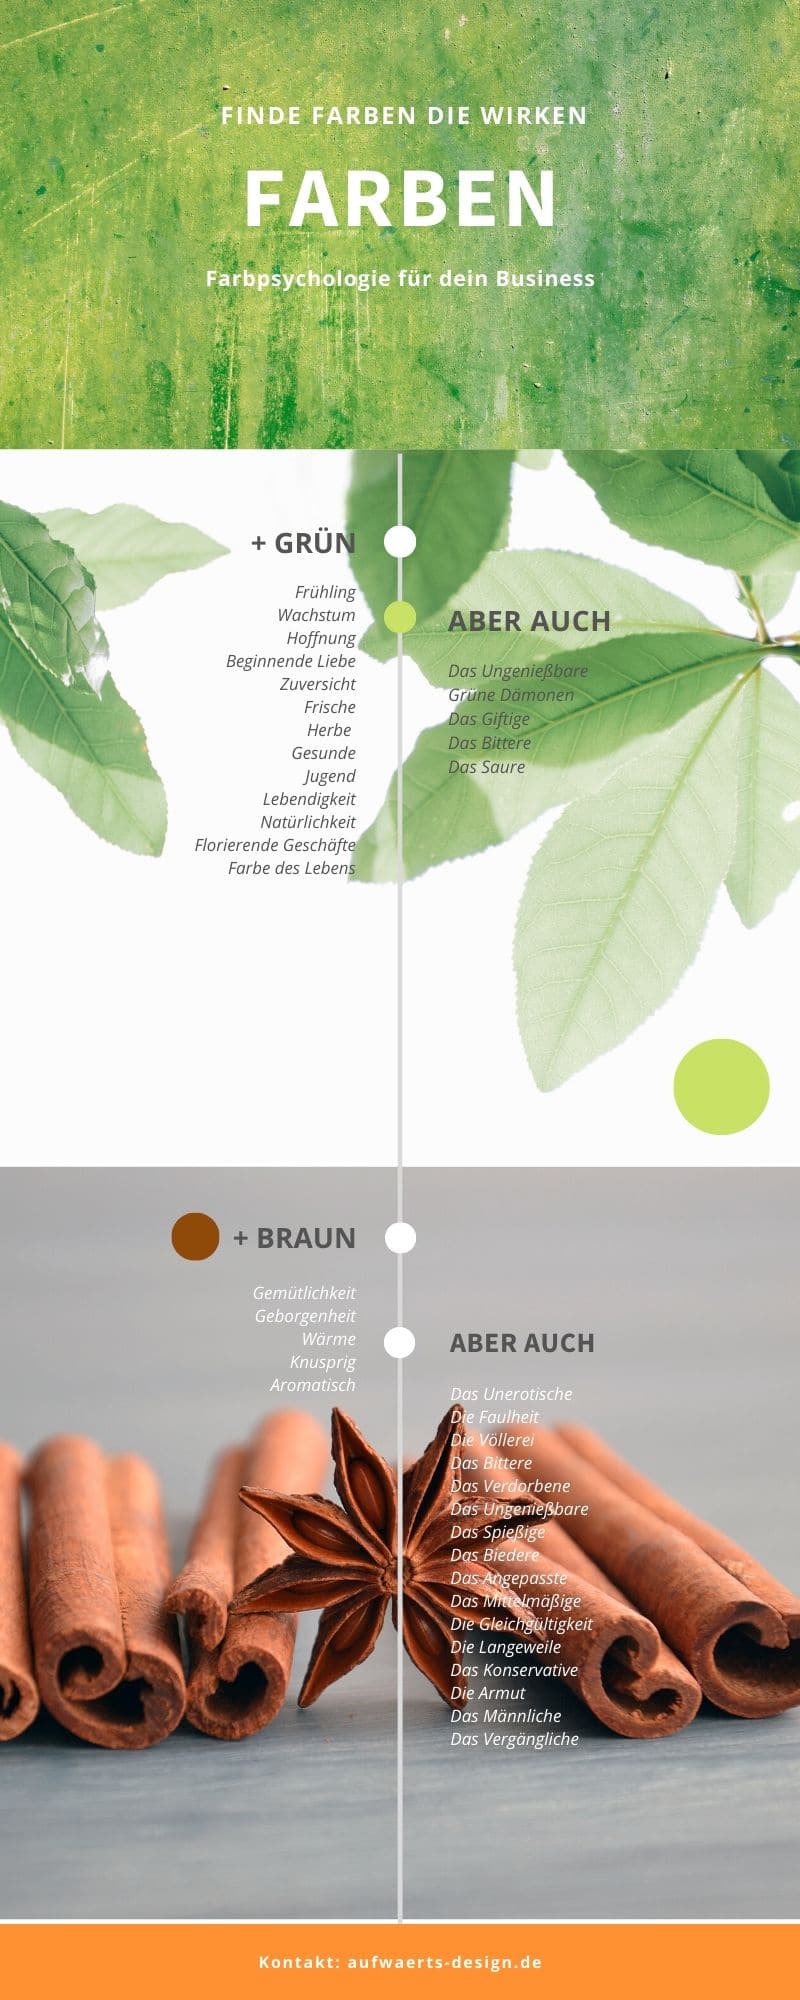 Farbpsychologie: Grün und Braun. So wirken die Farben auf uns.